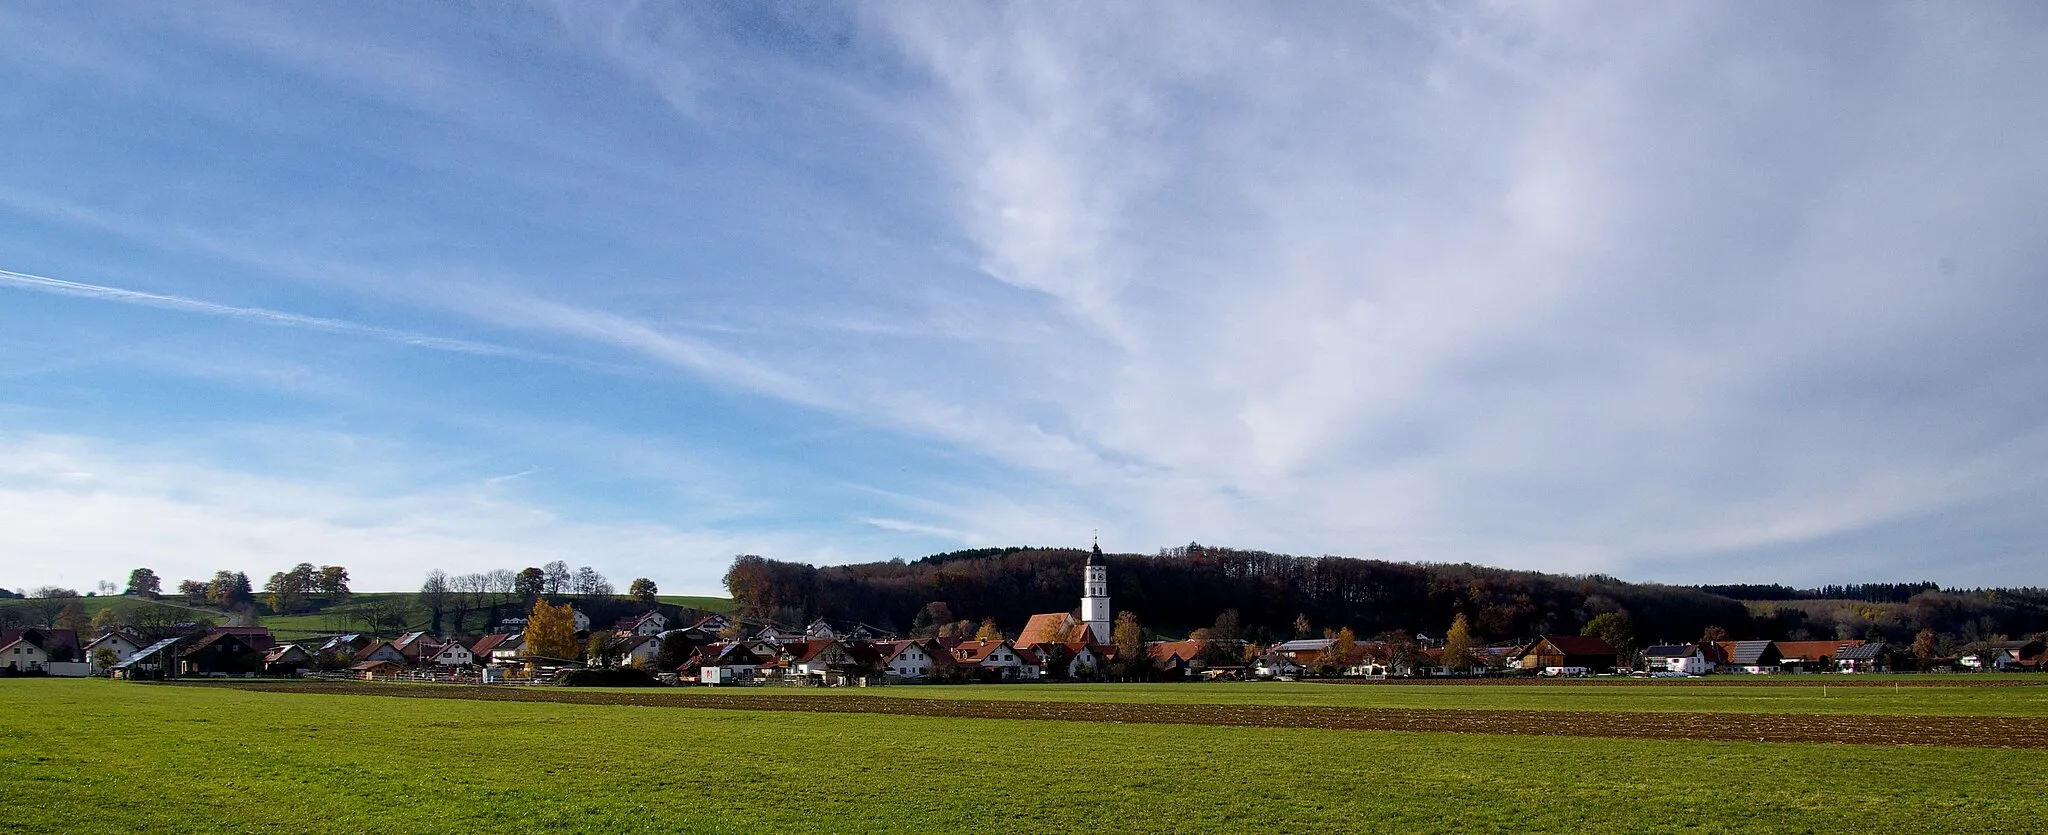 Photo showing: Bilder von der Mindelburg oberhalb der Stadt Mindelheim